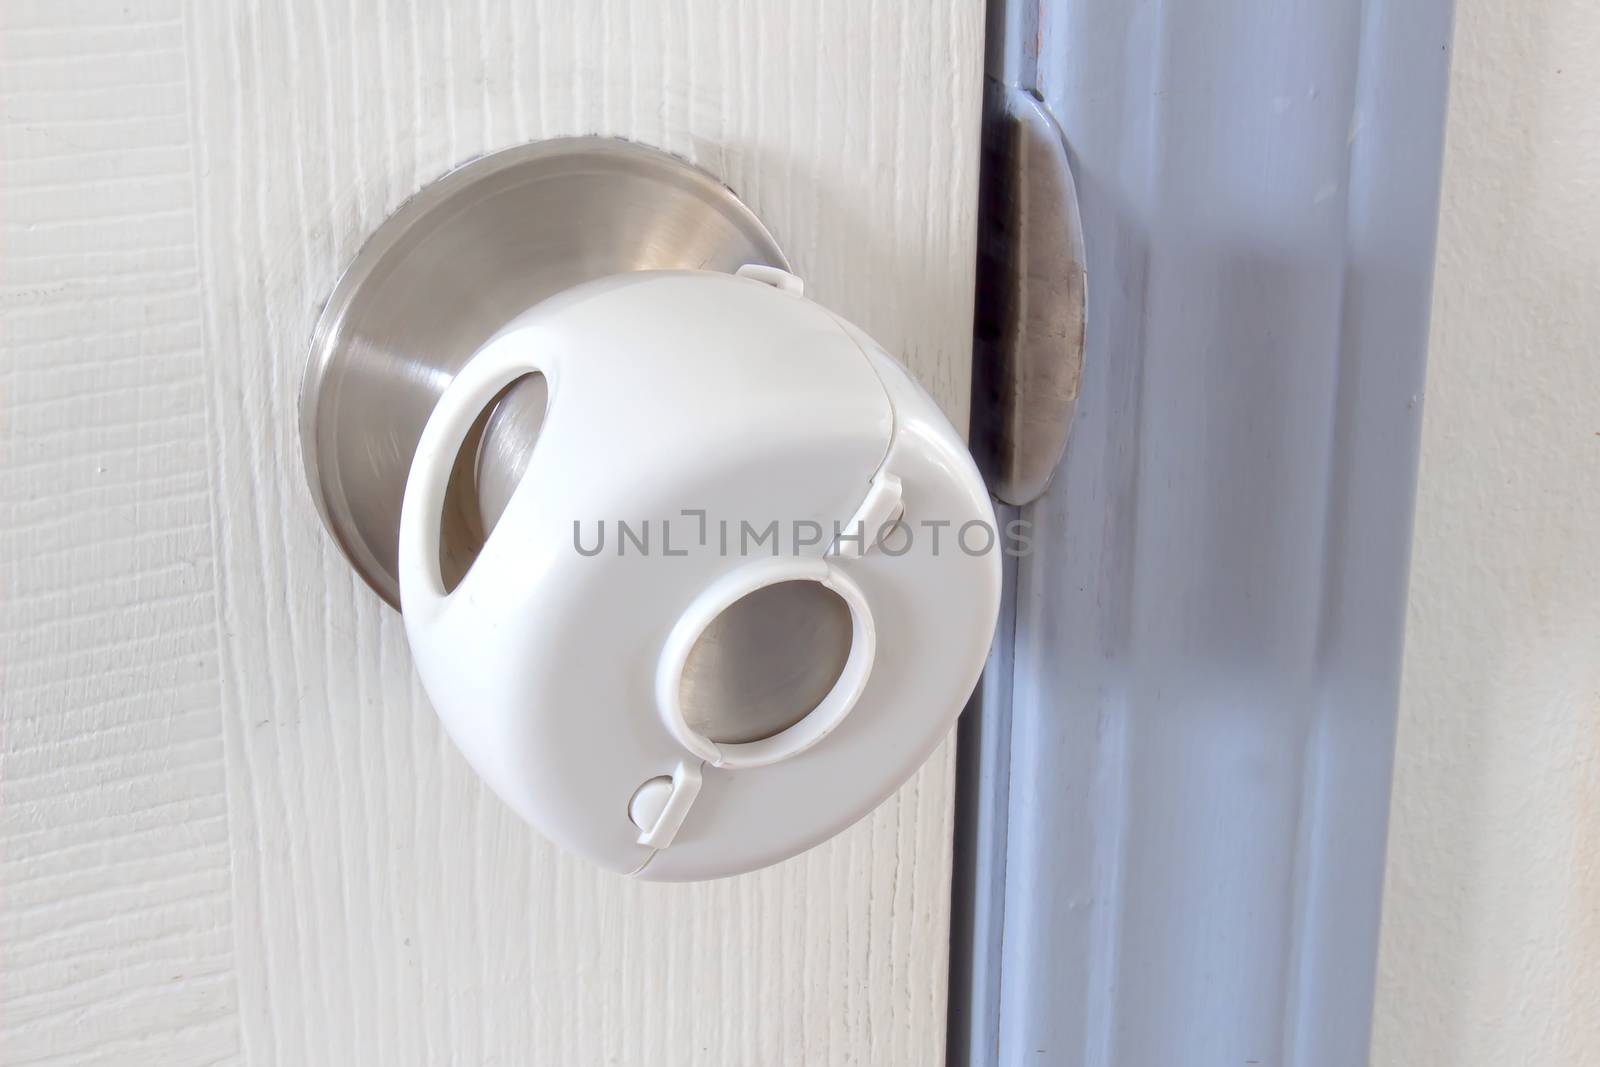 Child Proof Door Knob Covers over doorknob